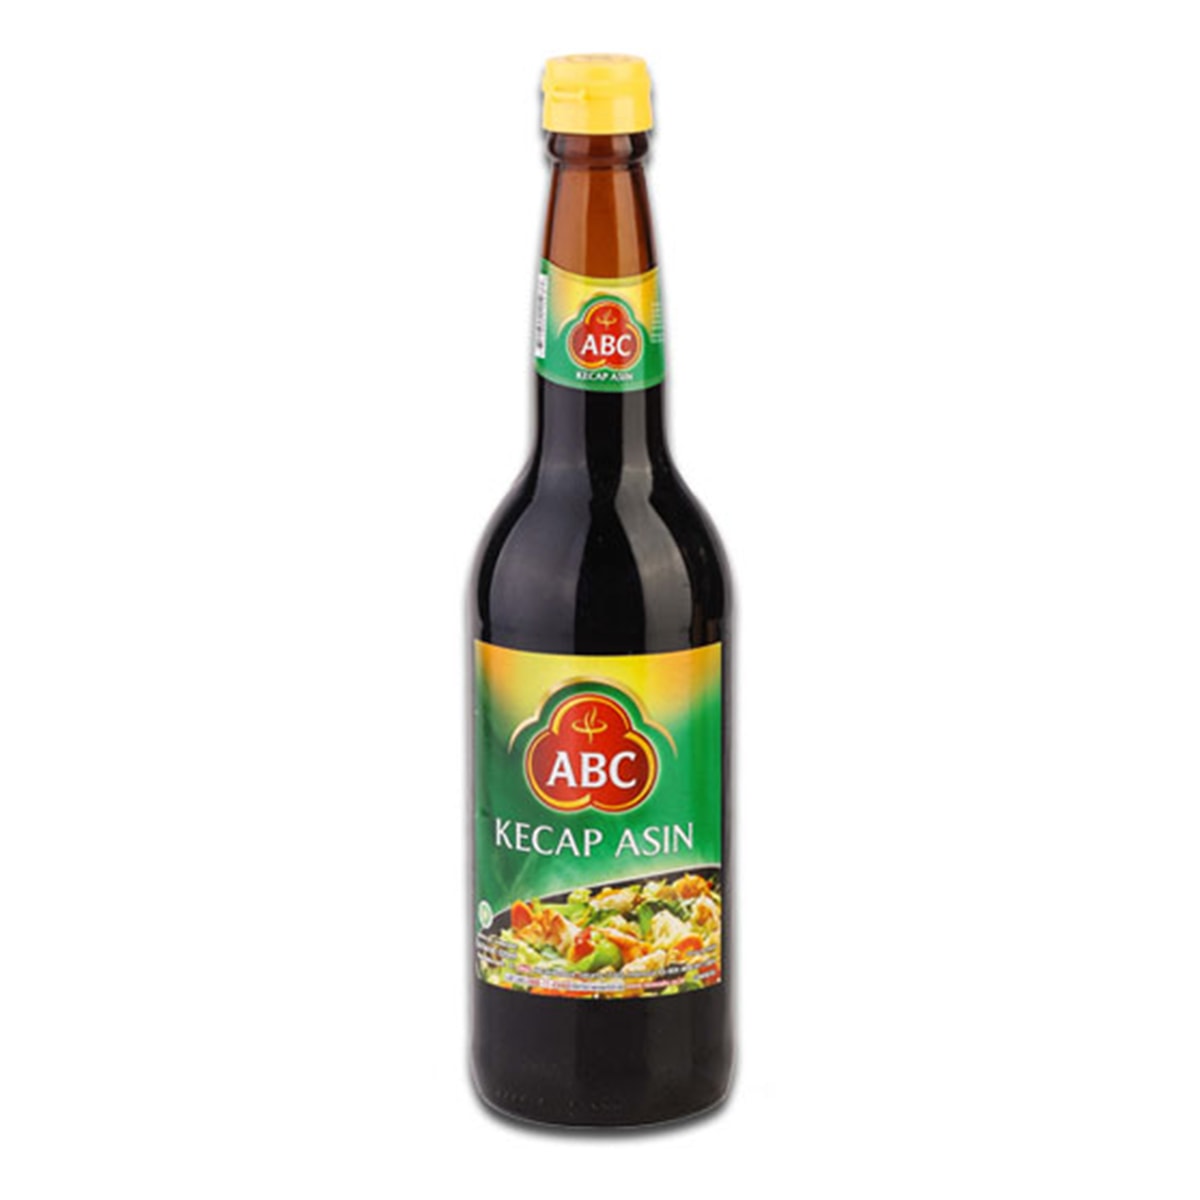 Buy ABC Kecap Asin (Indonesian Salty Soya Sauce) - 620 ml